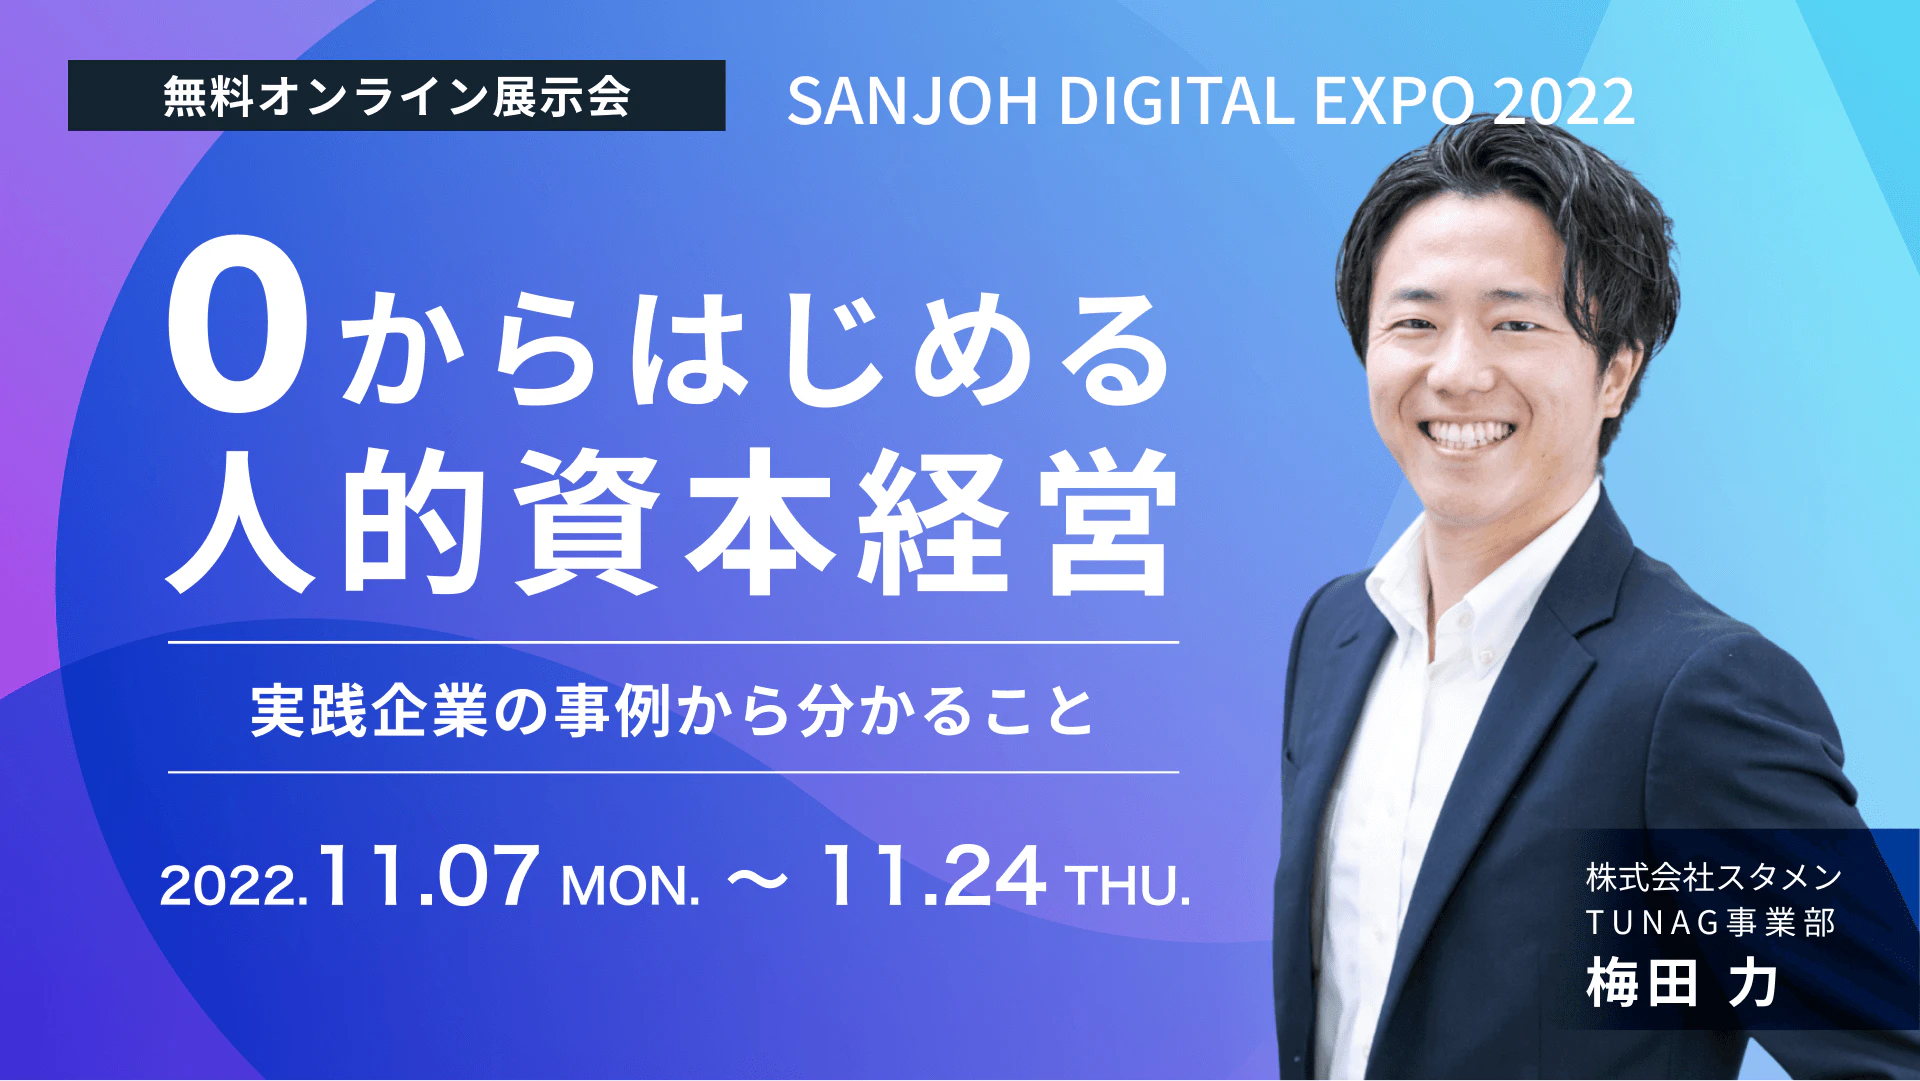 TUNAG、北海道の中小企業の働き方“変革”を支援するオンライン展示会「SANJOH DIGITAL EXPO 2022」に出展